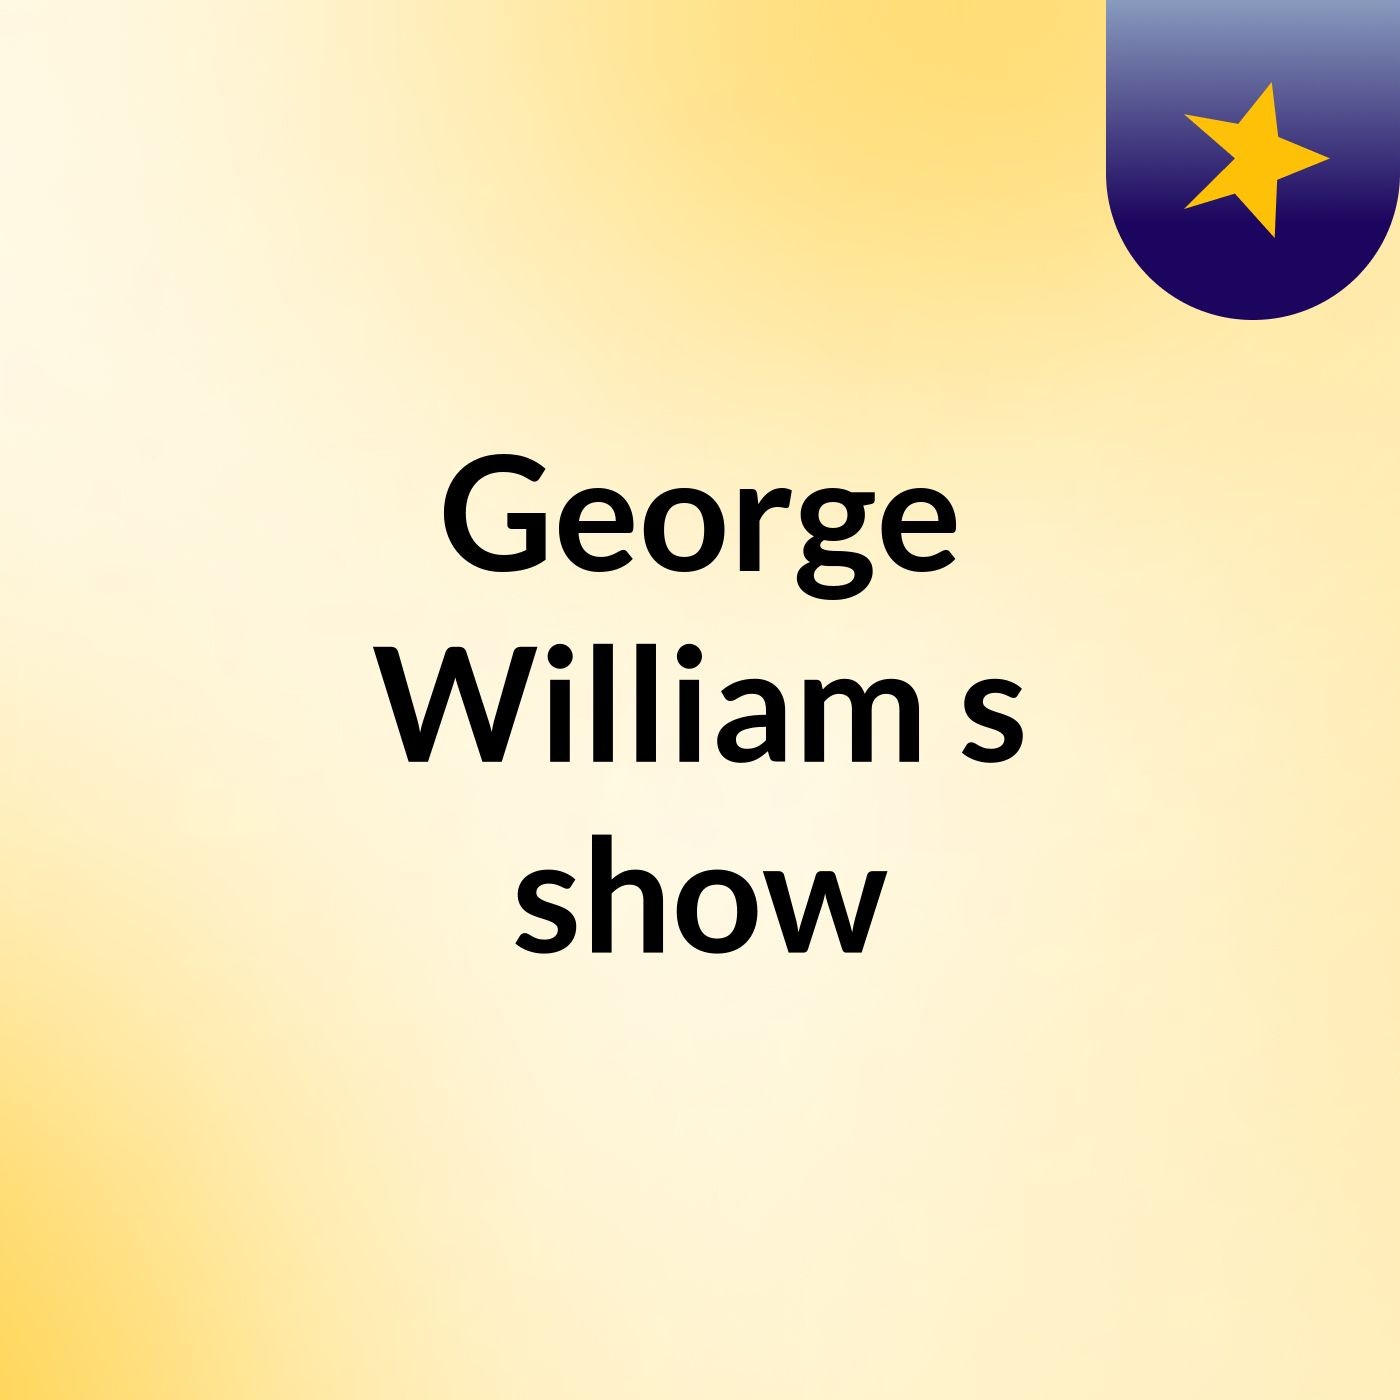 George William's show